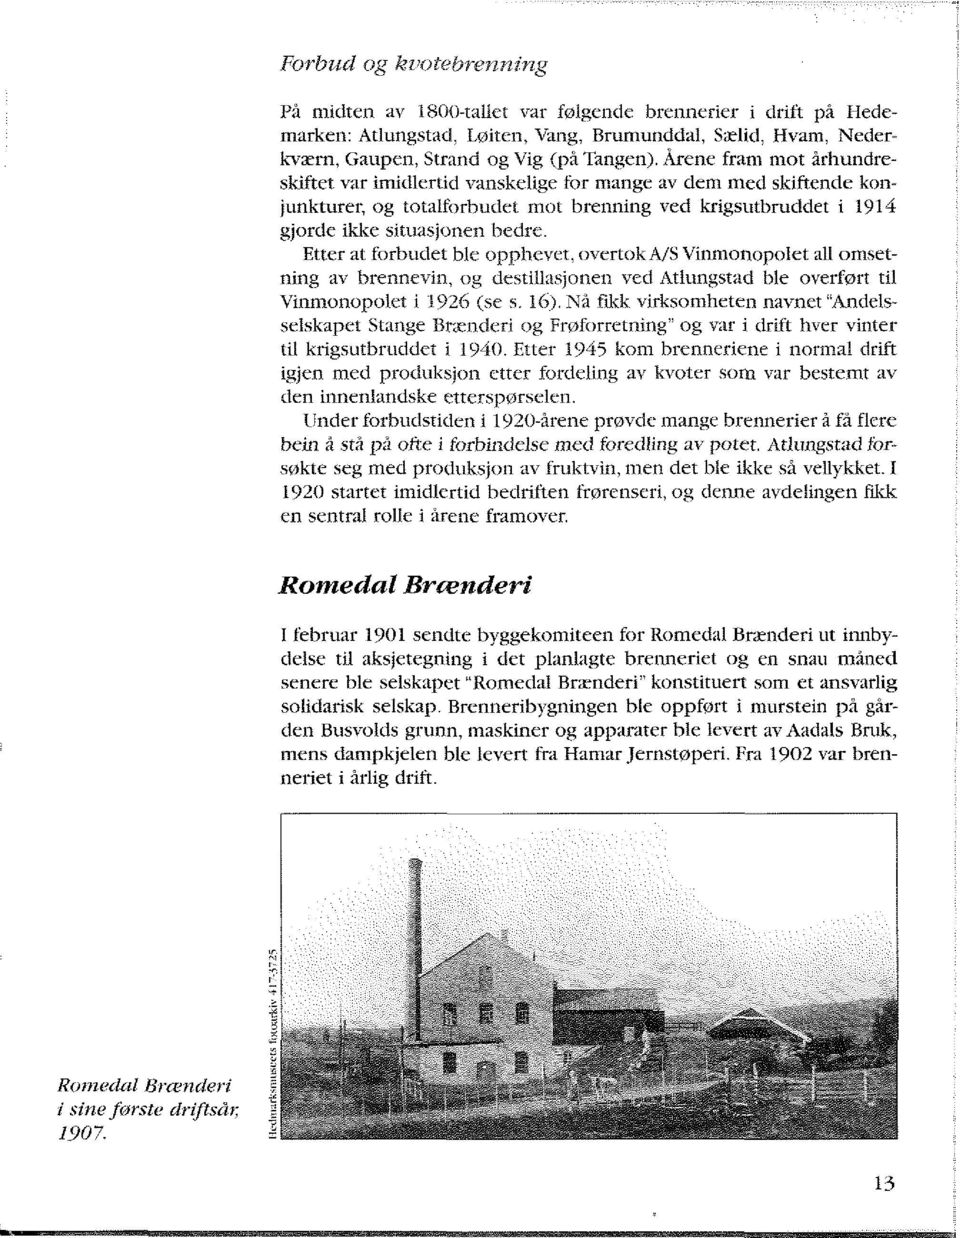 Etter at forbudet ble opphevet, overtok A/S Vinmonopolet all omsetning av brennevin, og destillasjonen ved Atlungstad ble overført til Vinmonopolet i "1926 (se s. 16).